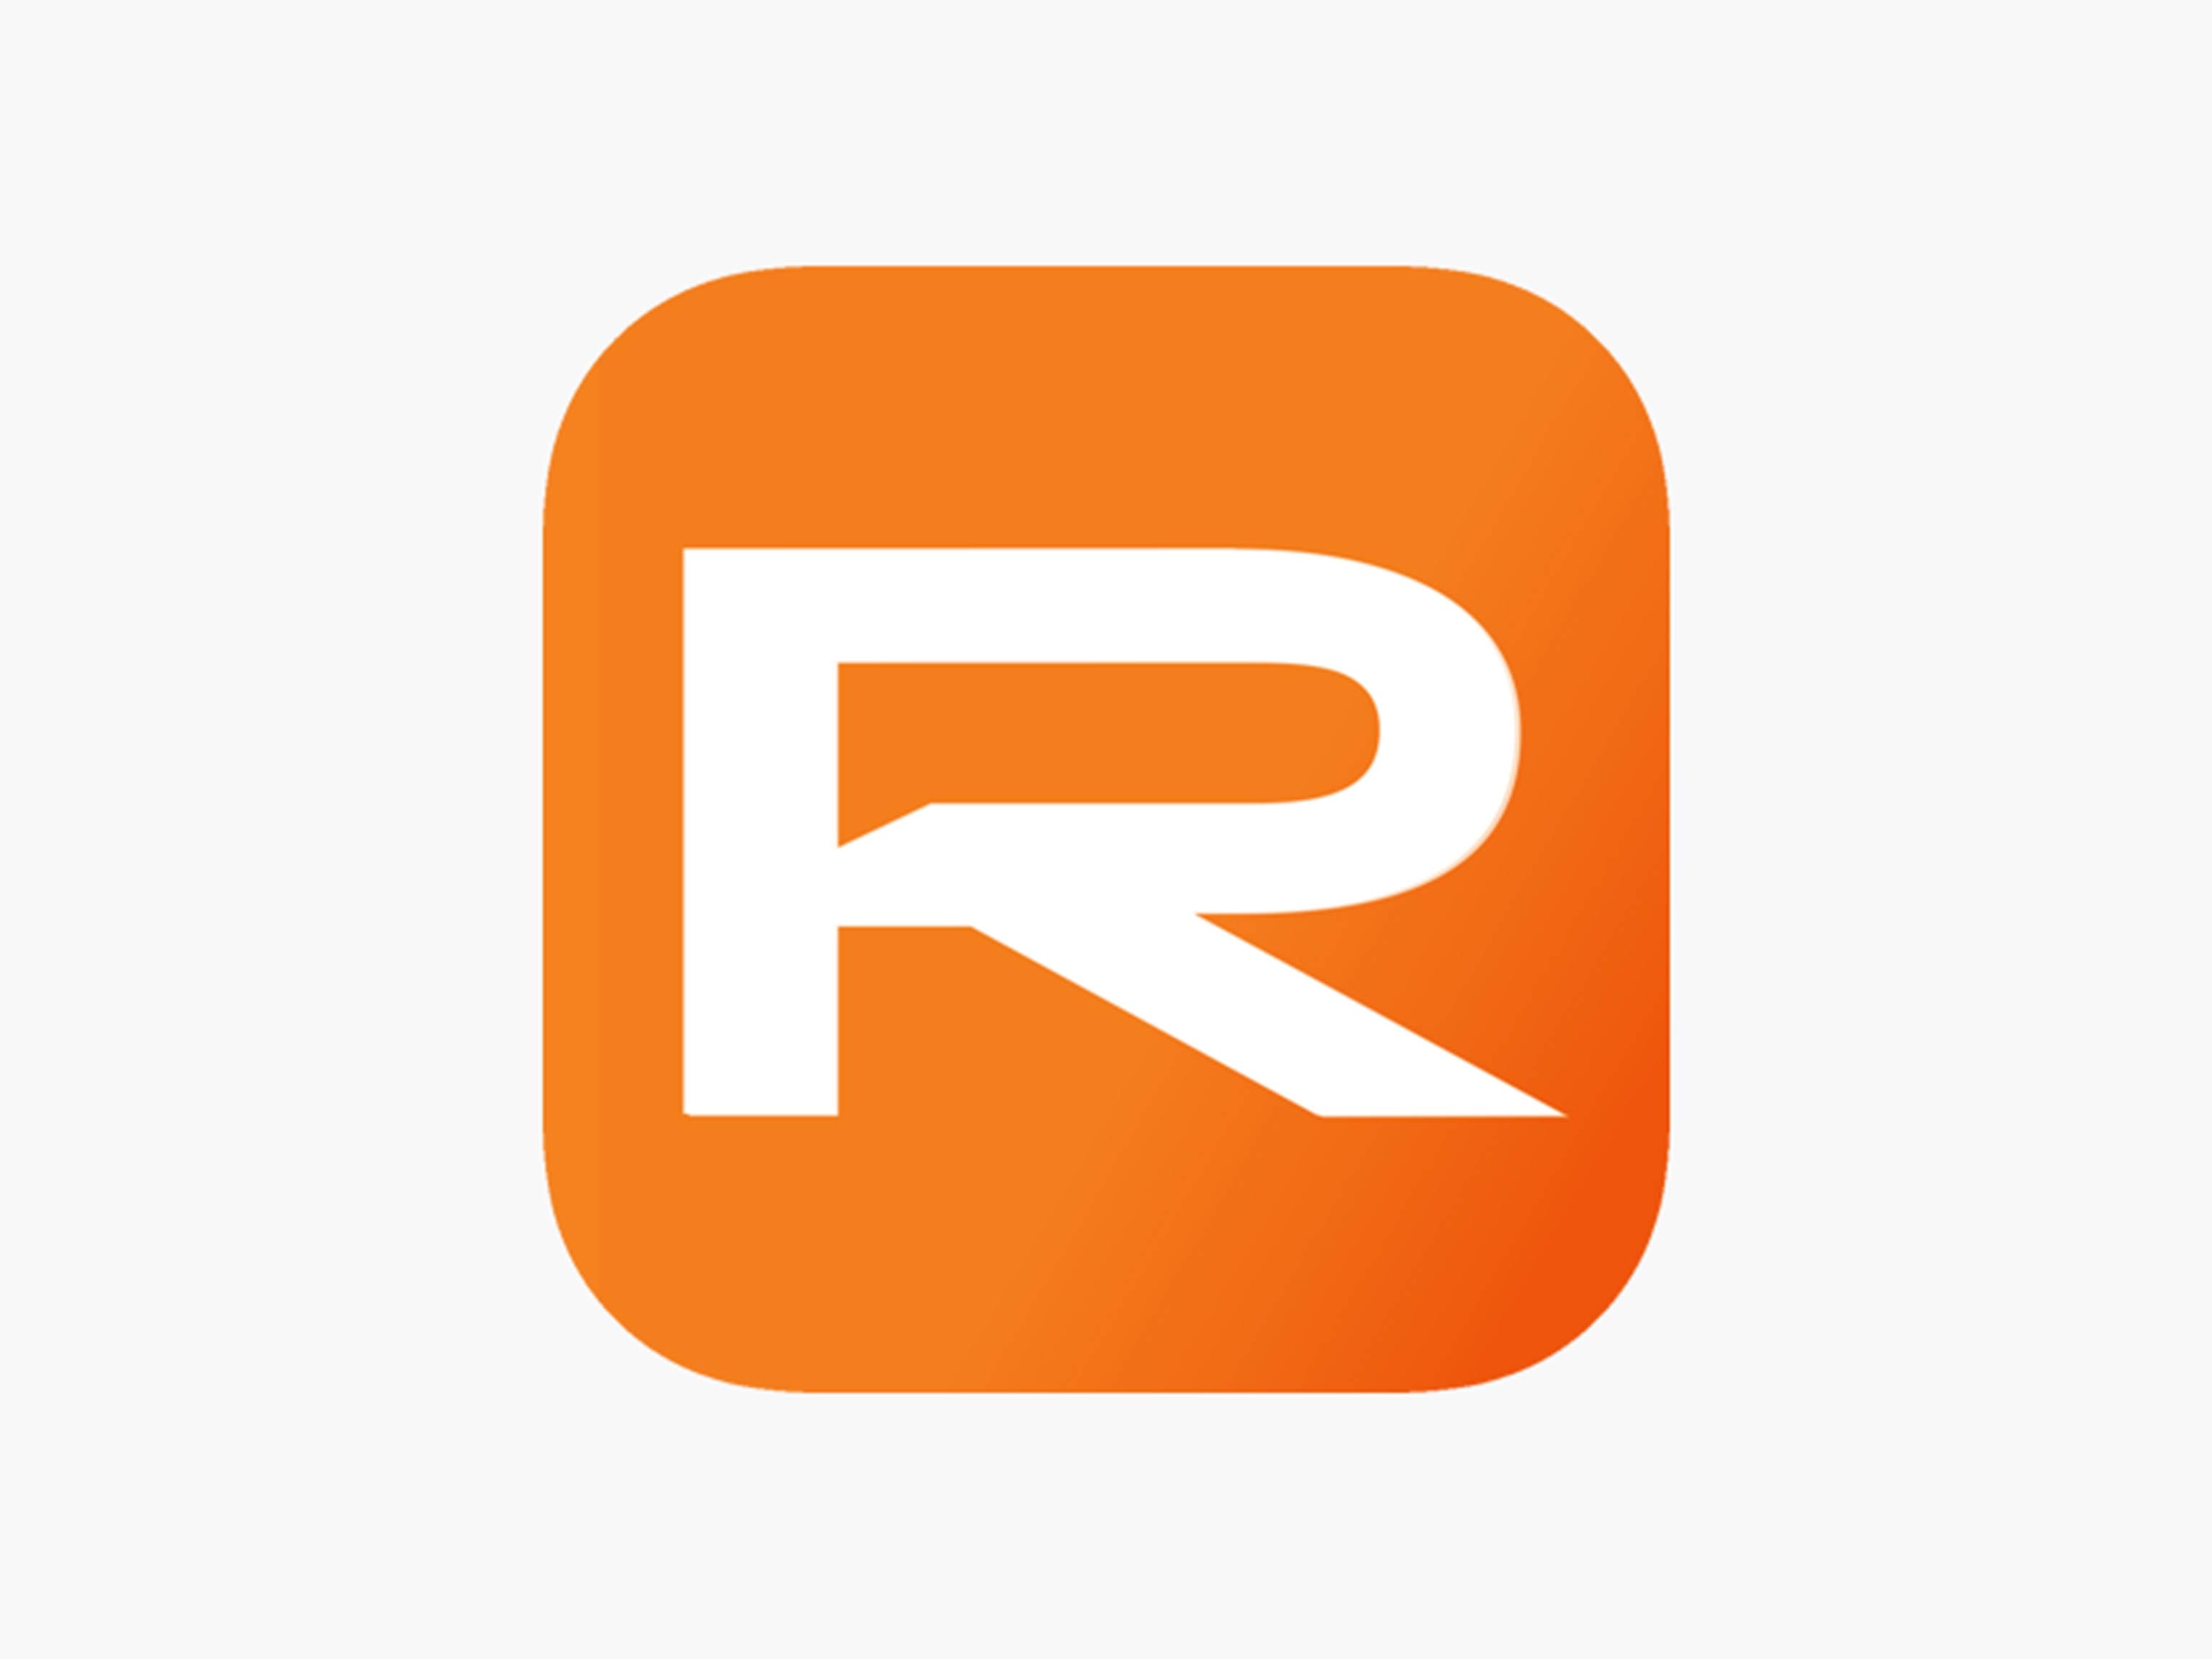 The Rever app logo